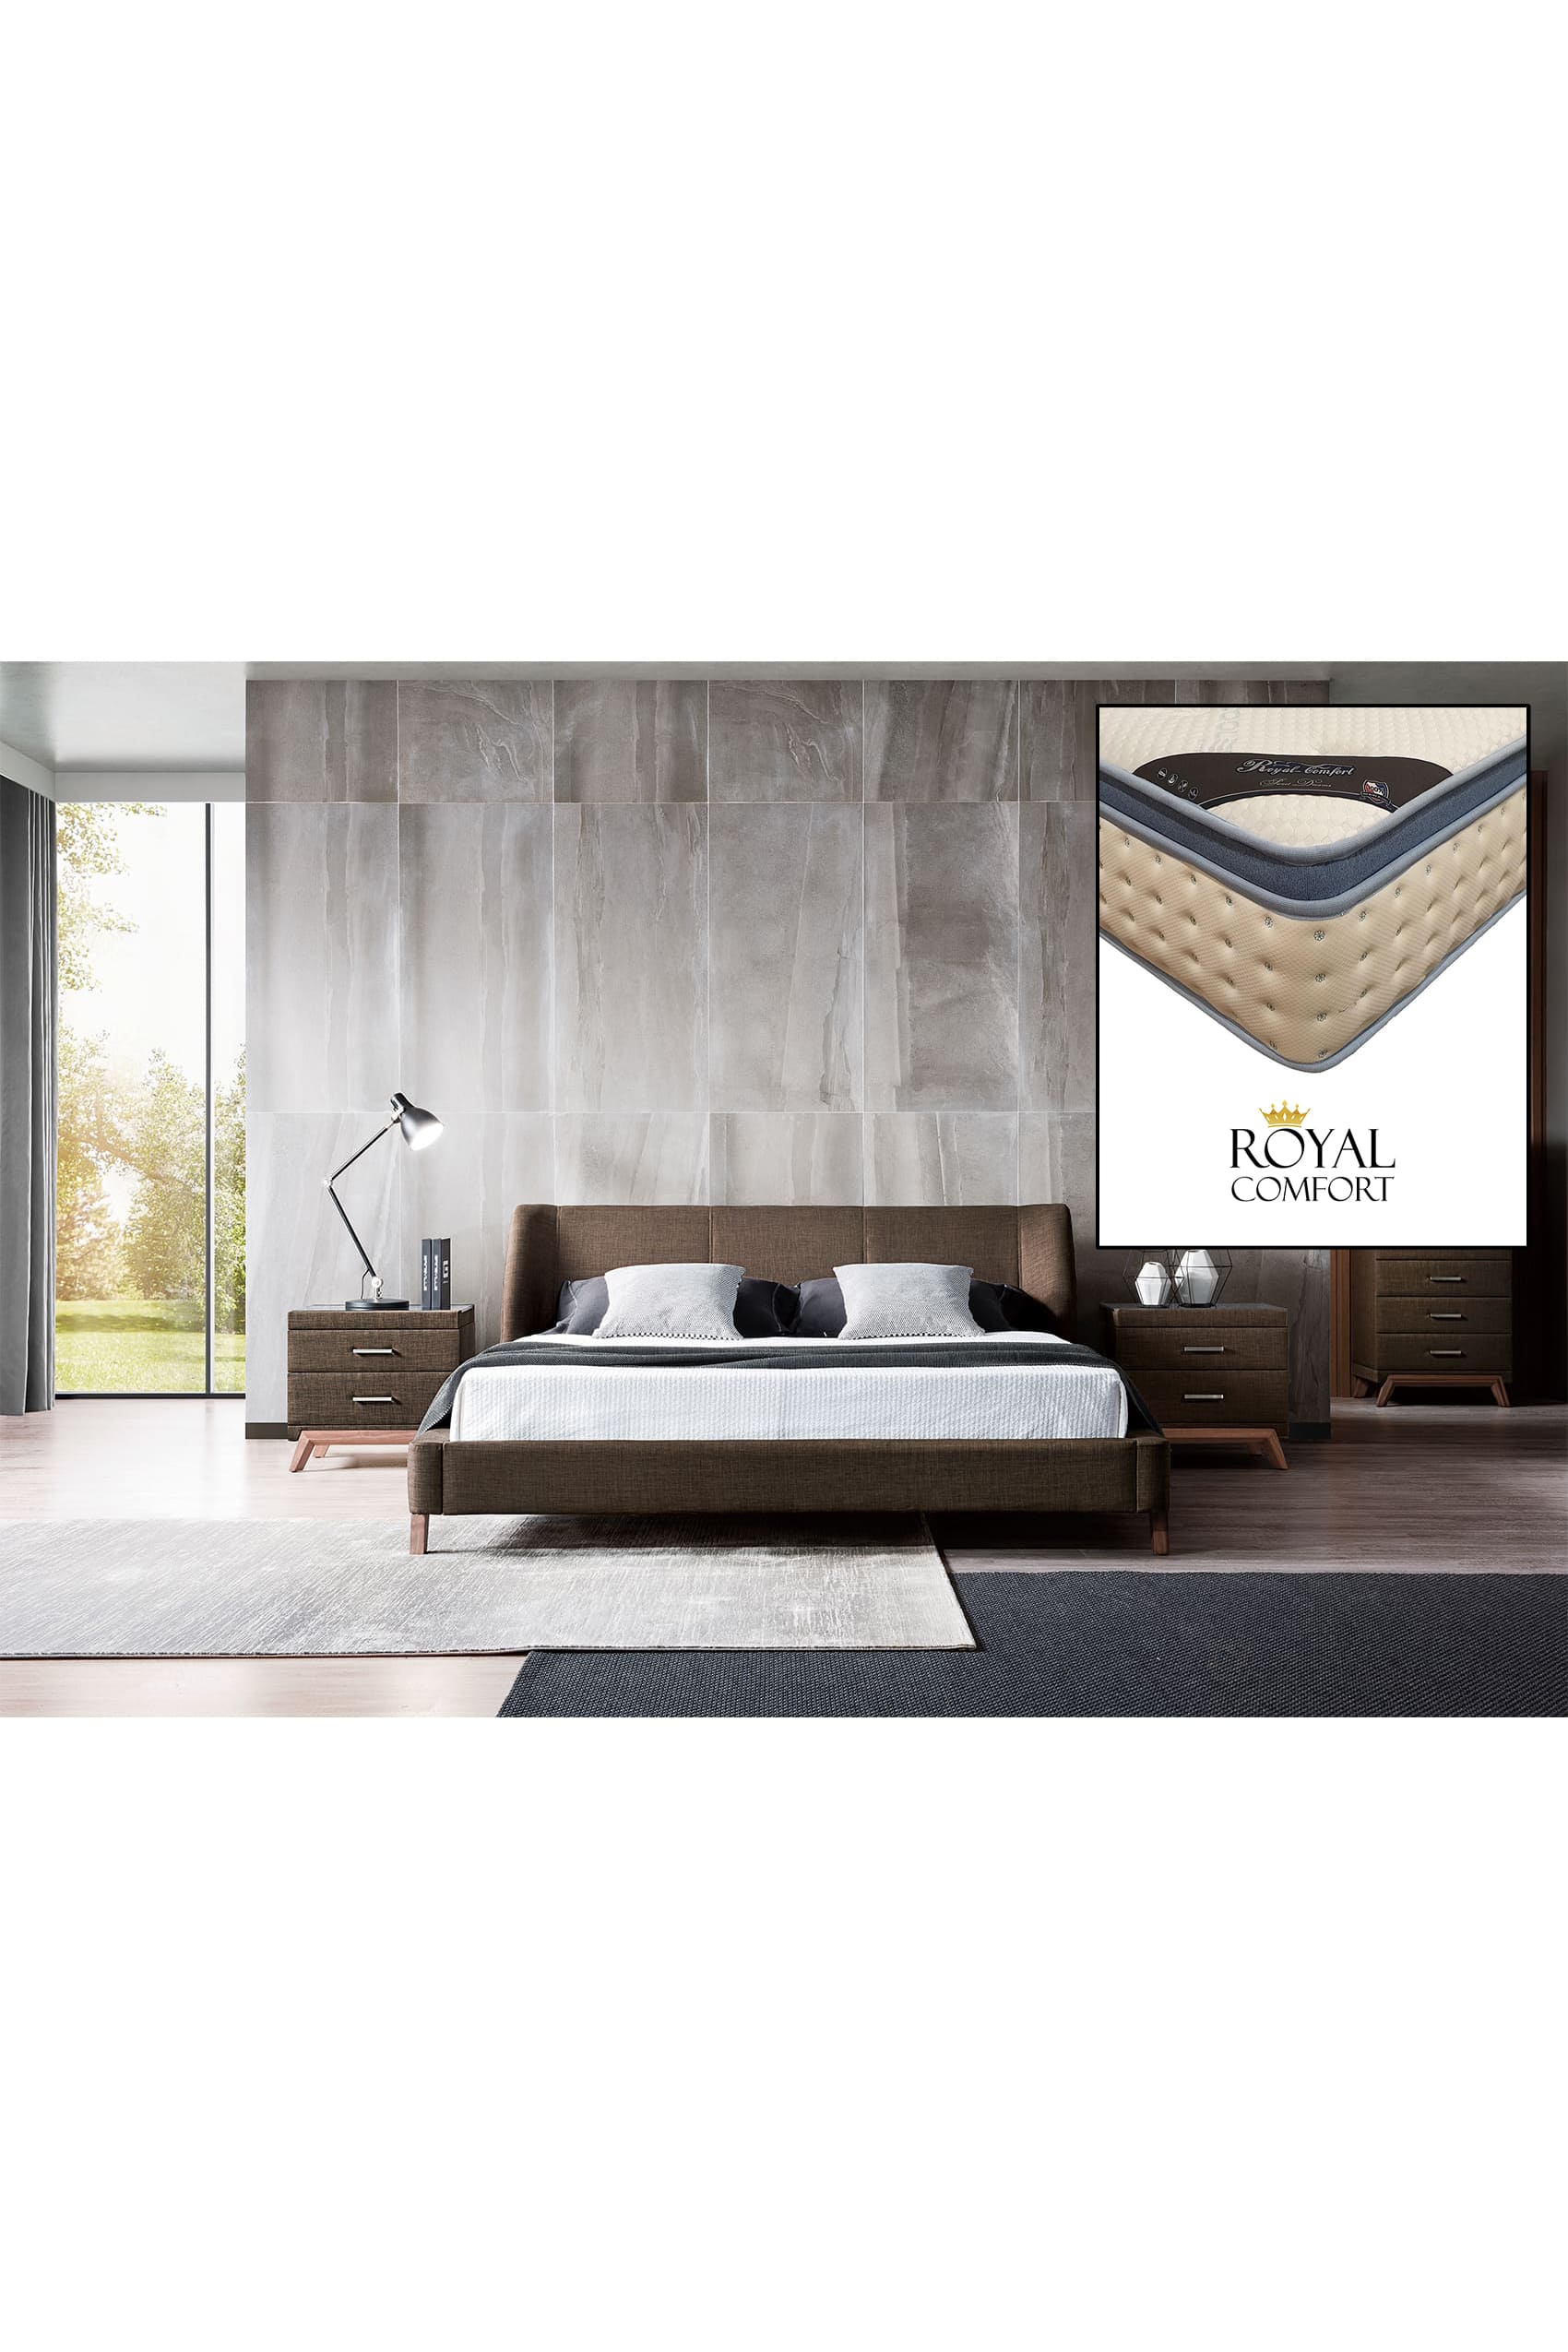 Ander Designer Bed Frame + Royal Comfort Mattress